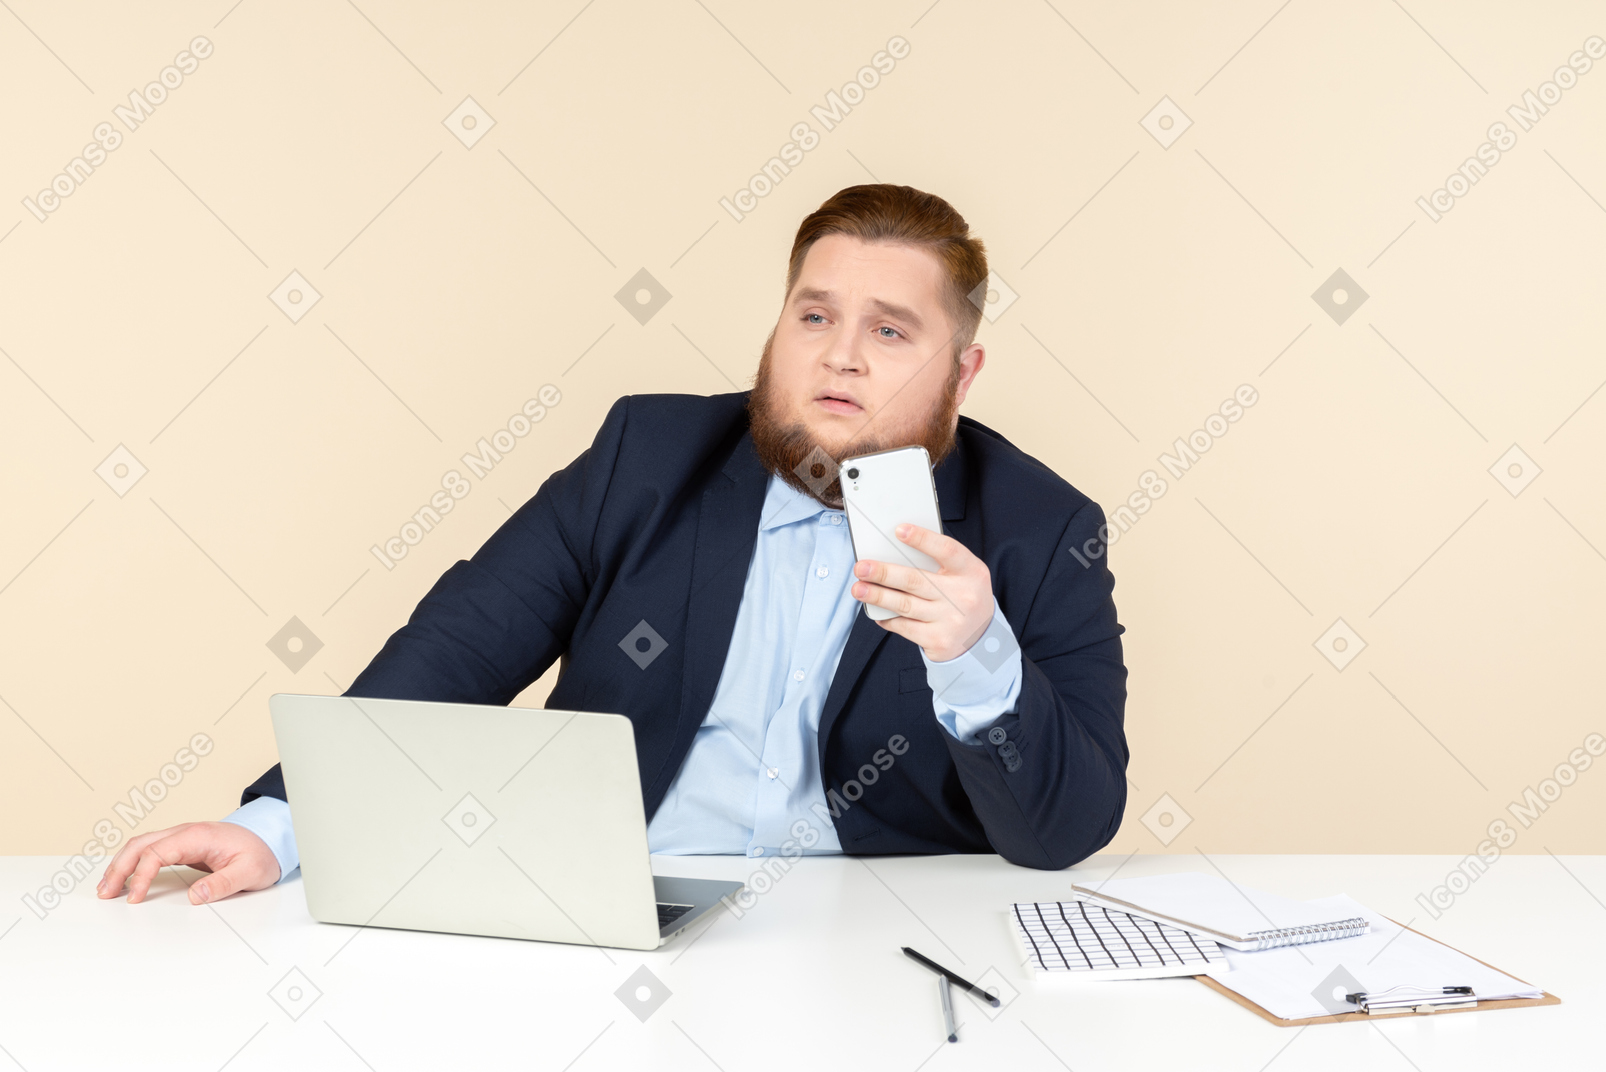 Задумчивый молодой человек с избыточным весом сидит за офисным столом и держит телефон